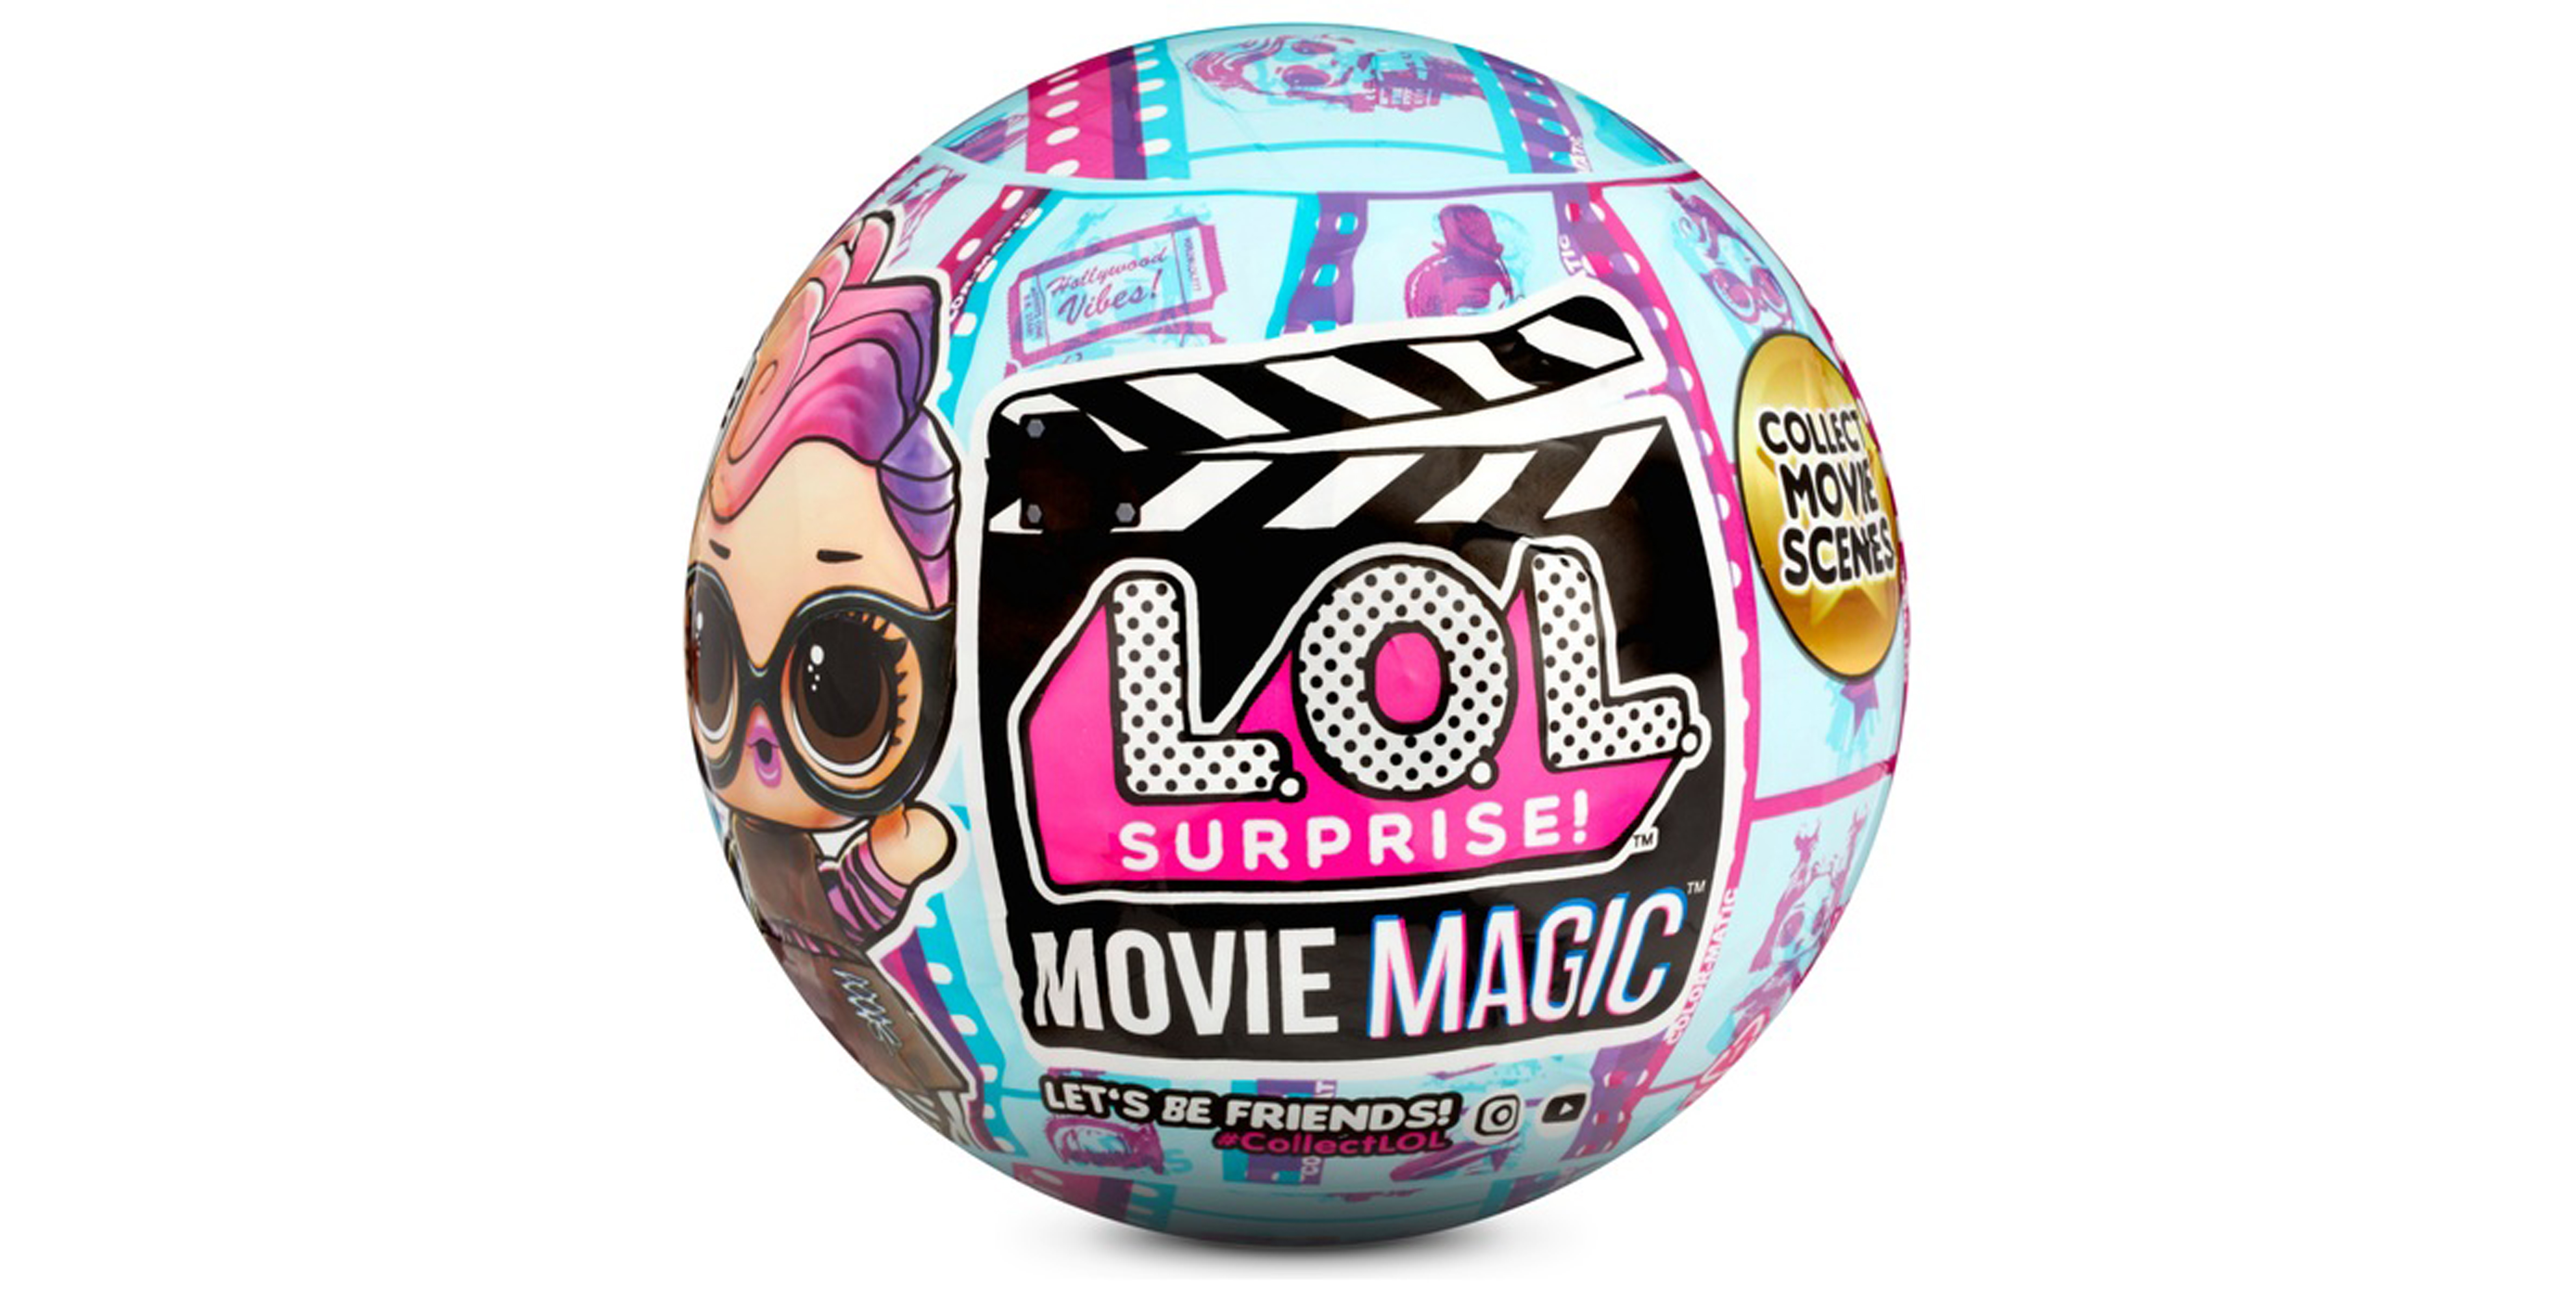 LOL Movie Magic ball